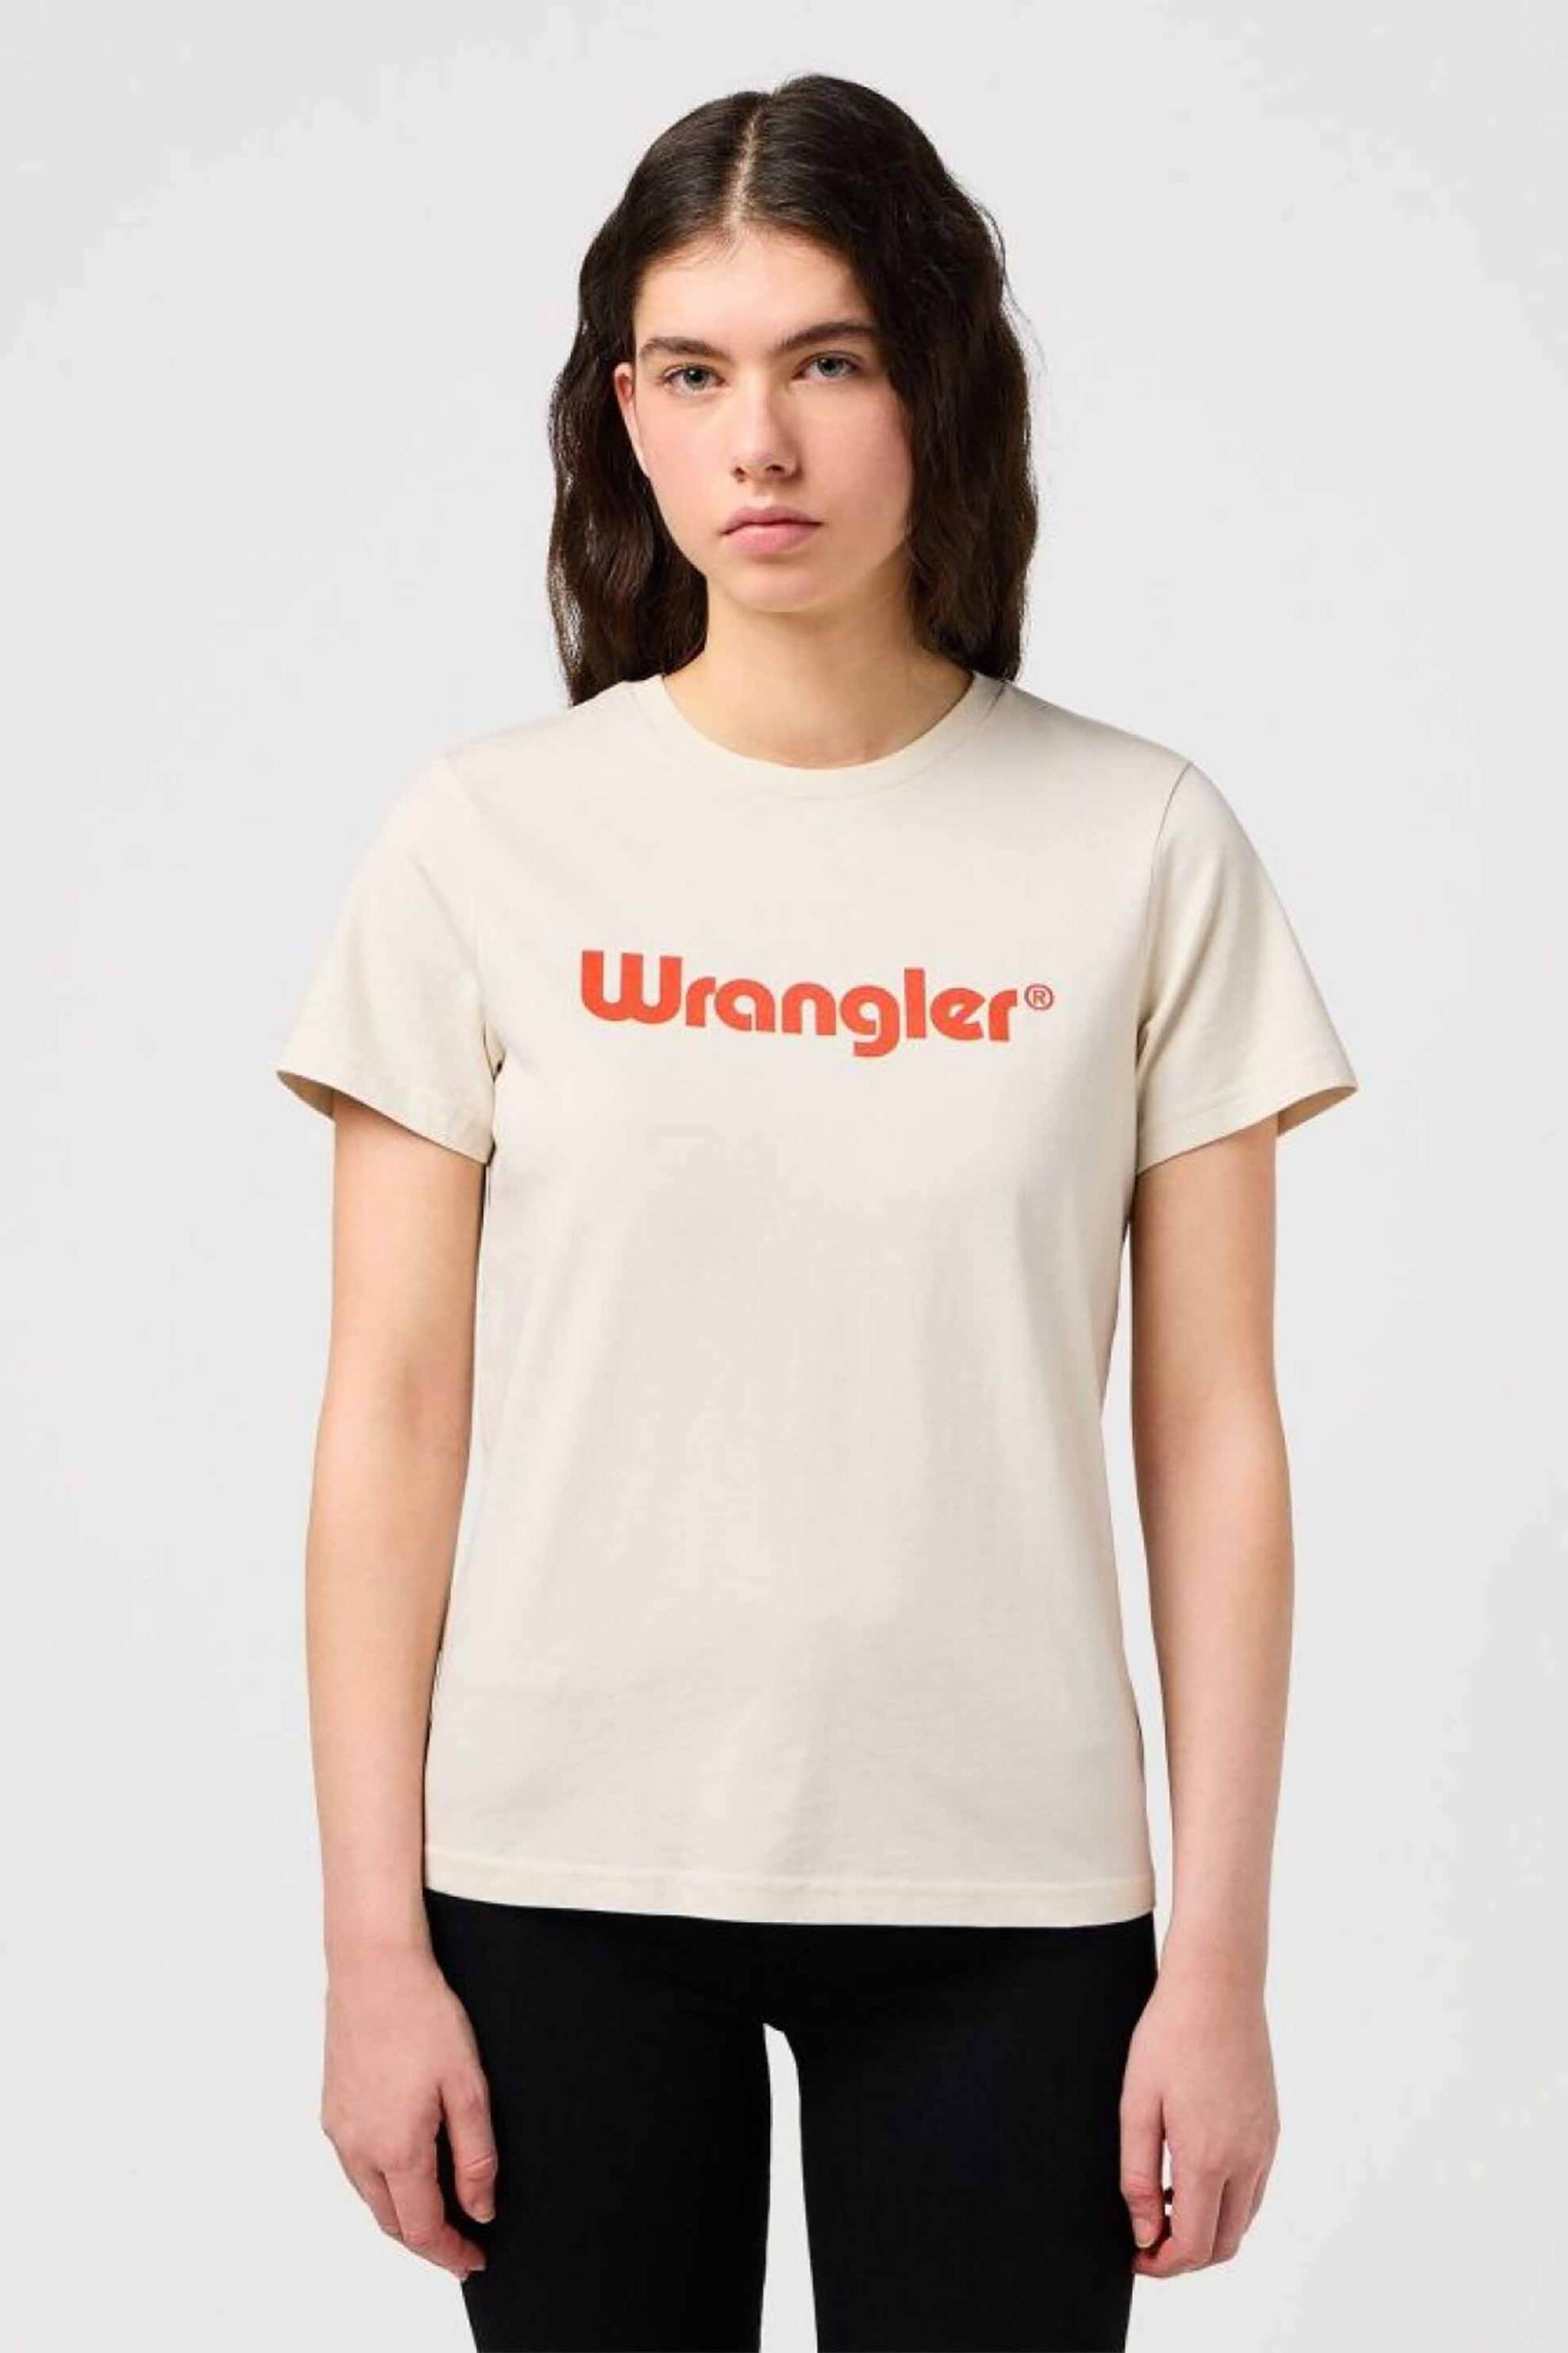 Γυναικεία Ρούχα & Αξεσουάρ > Γυναικεία Ρούχα > Γυναικεία Τοπ > Γυναικεία T-Shirts Wrangler® γυναικείο T-shirt με logo print Regular Fit - 112350305 Εκρού